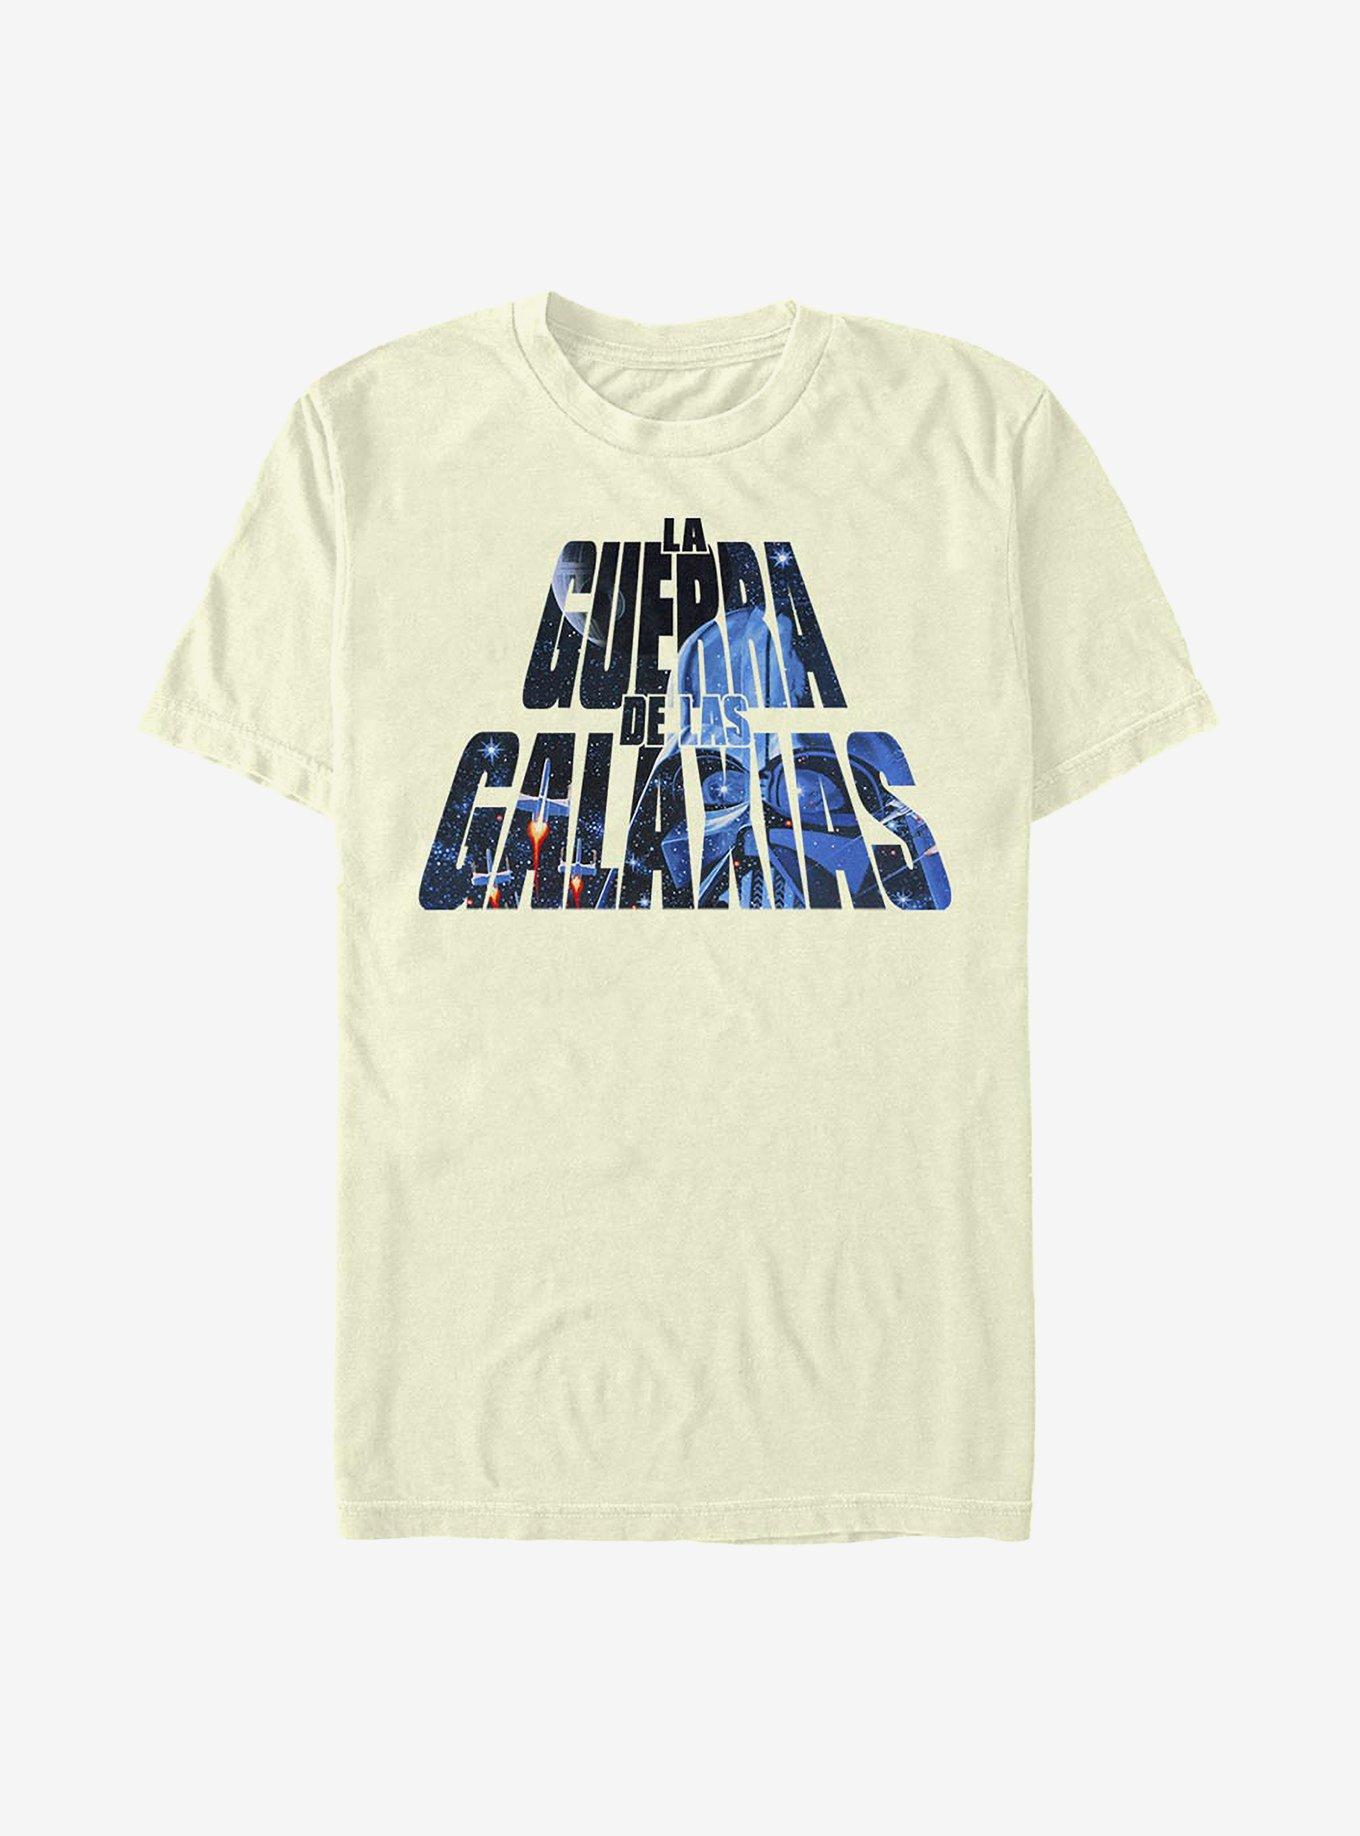 Star Wars De Las Galaxias T-Shirt, NATURAL, hi-res